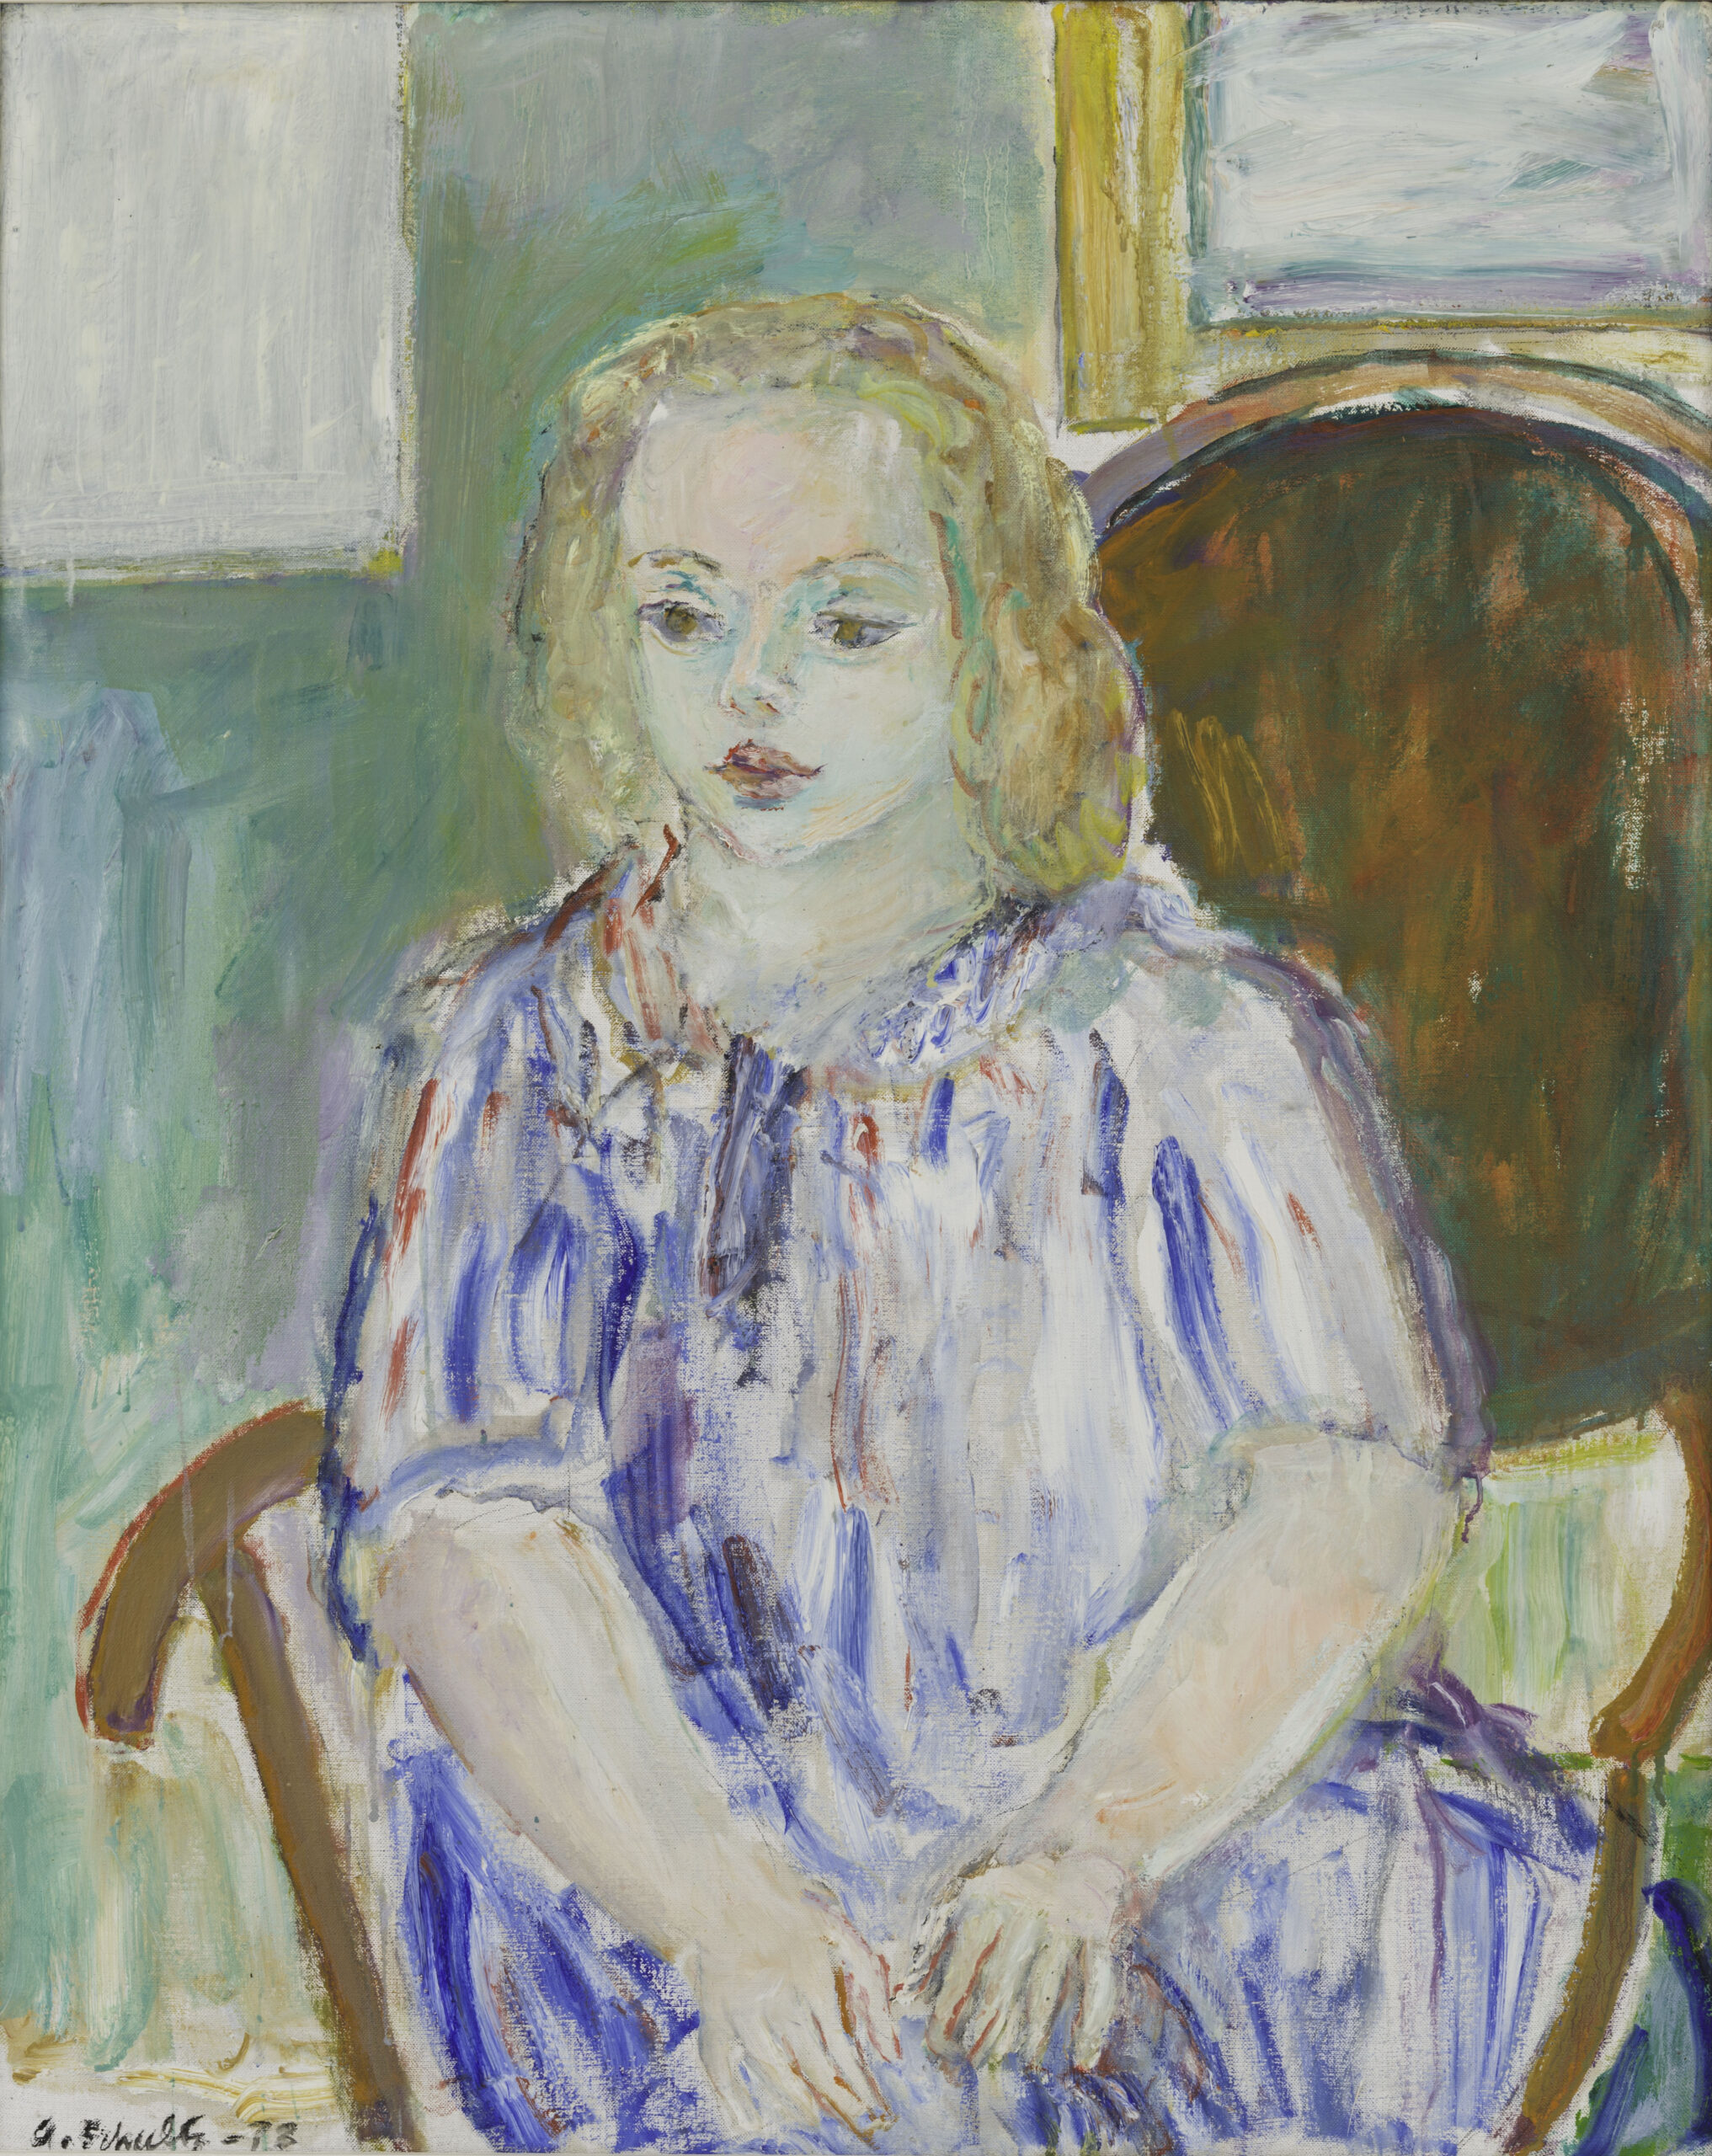 A Schultz maleri av Nini. Jente, i kjole, sittende i brun stol foran grønn vegg